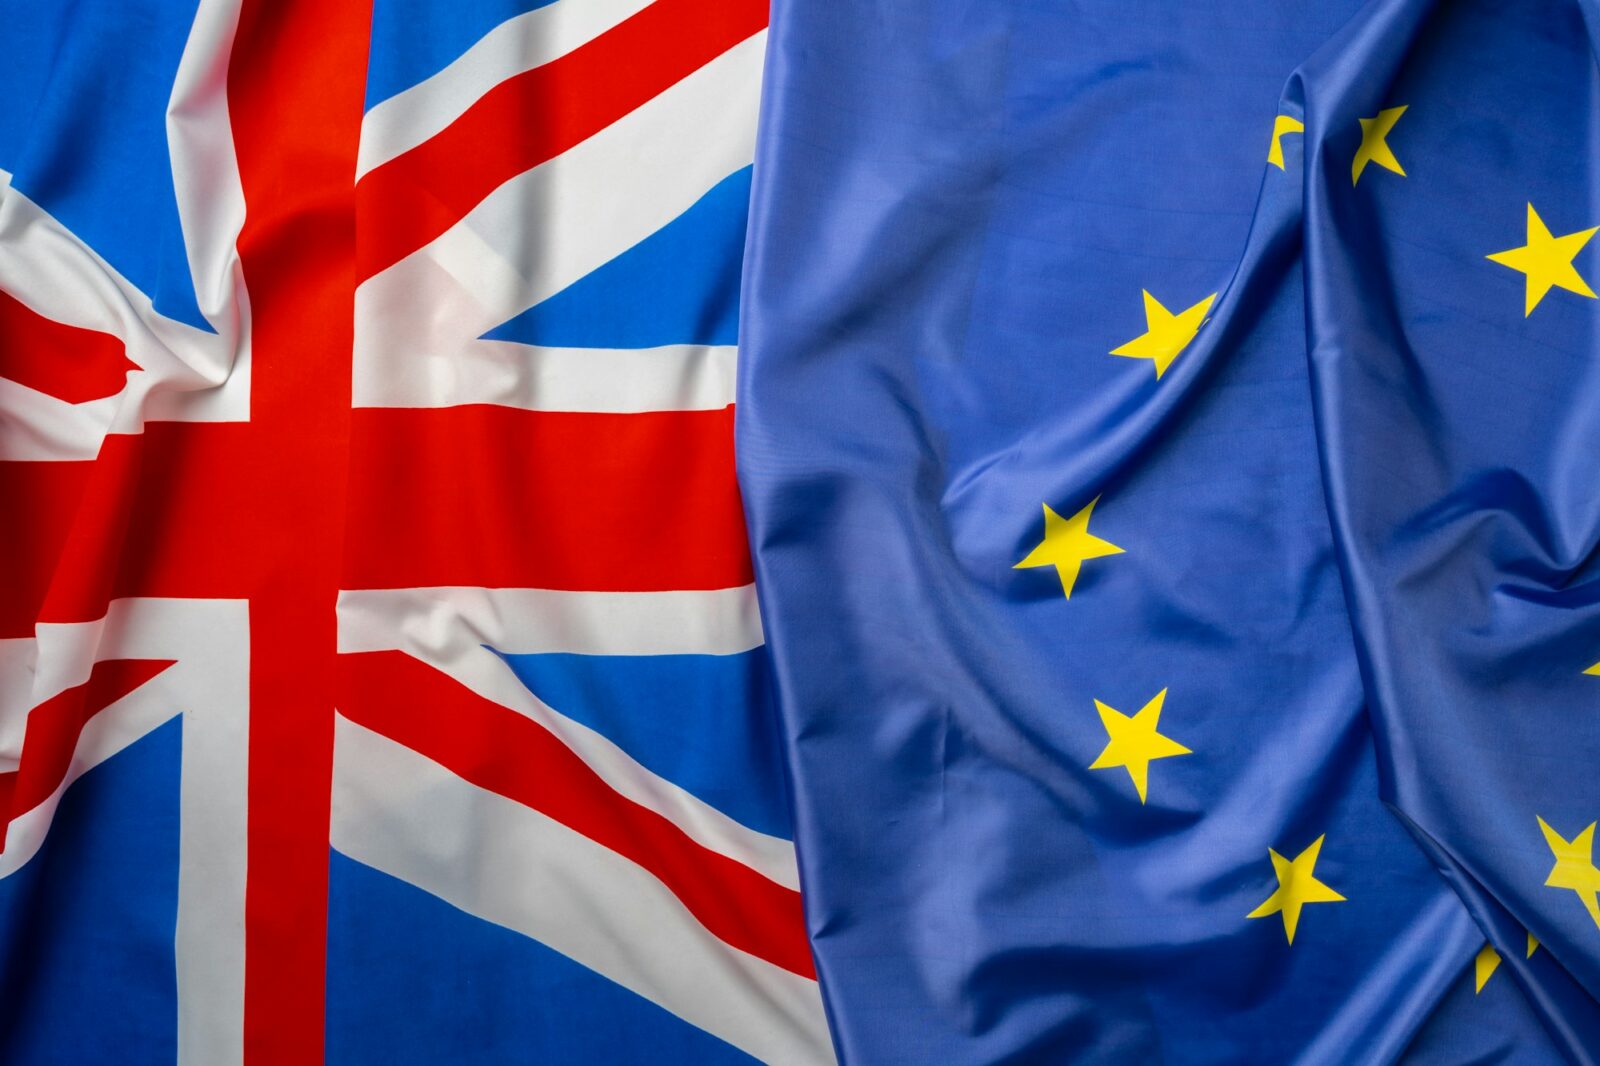 Drapeaux du Royaume-Uni et de l’Union européenne repliés ensemble